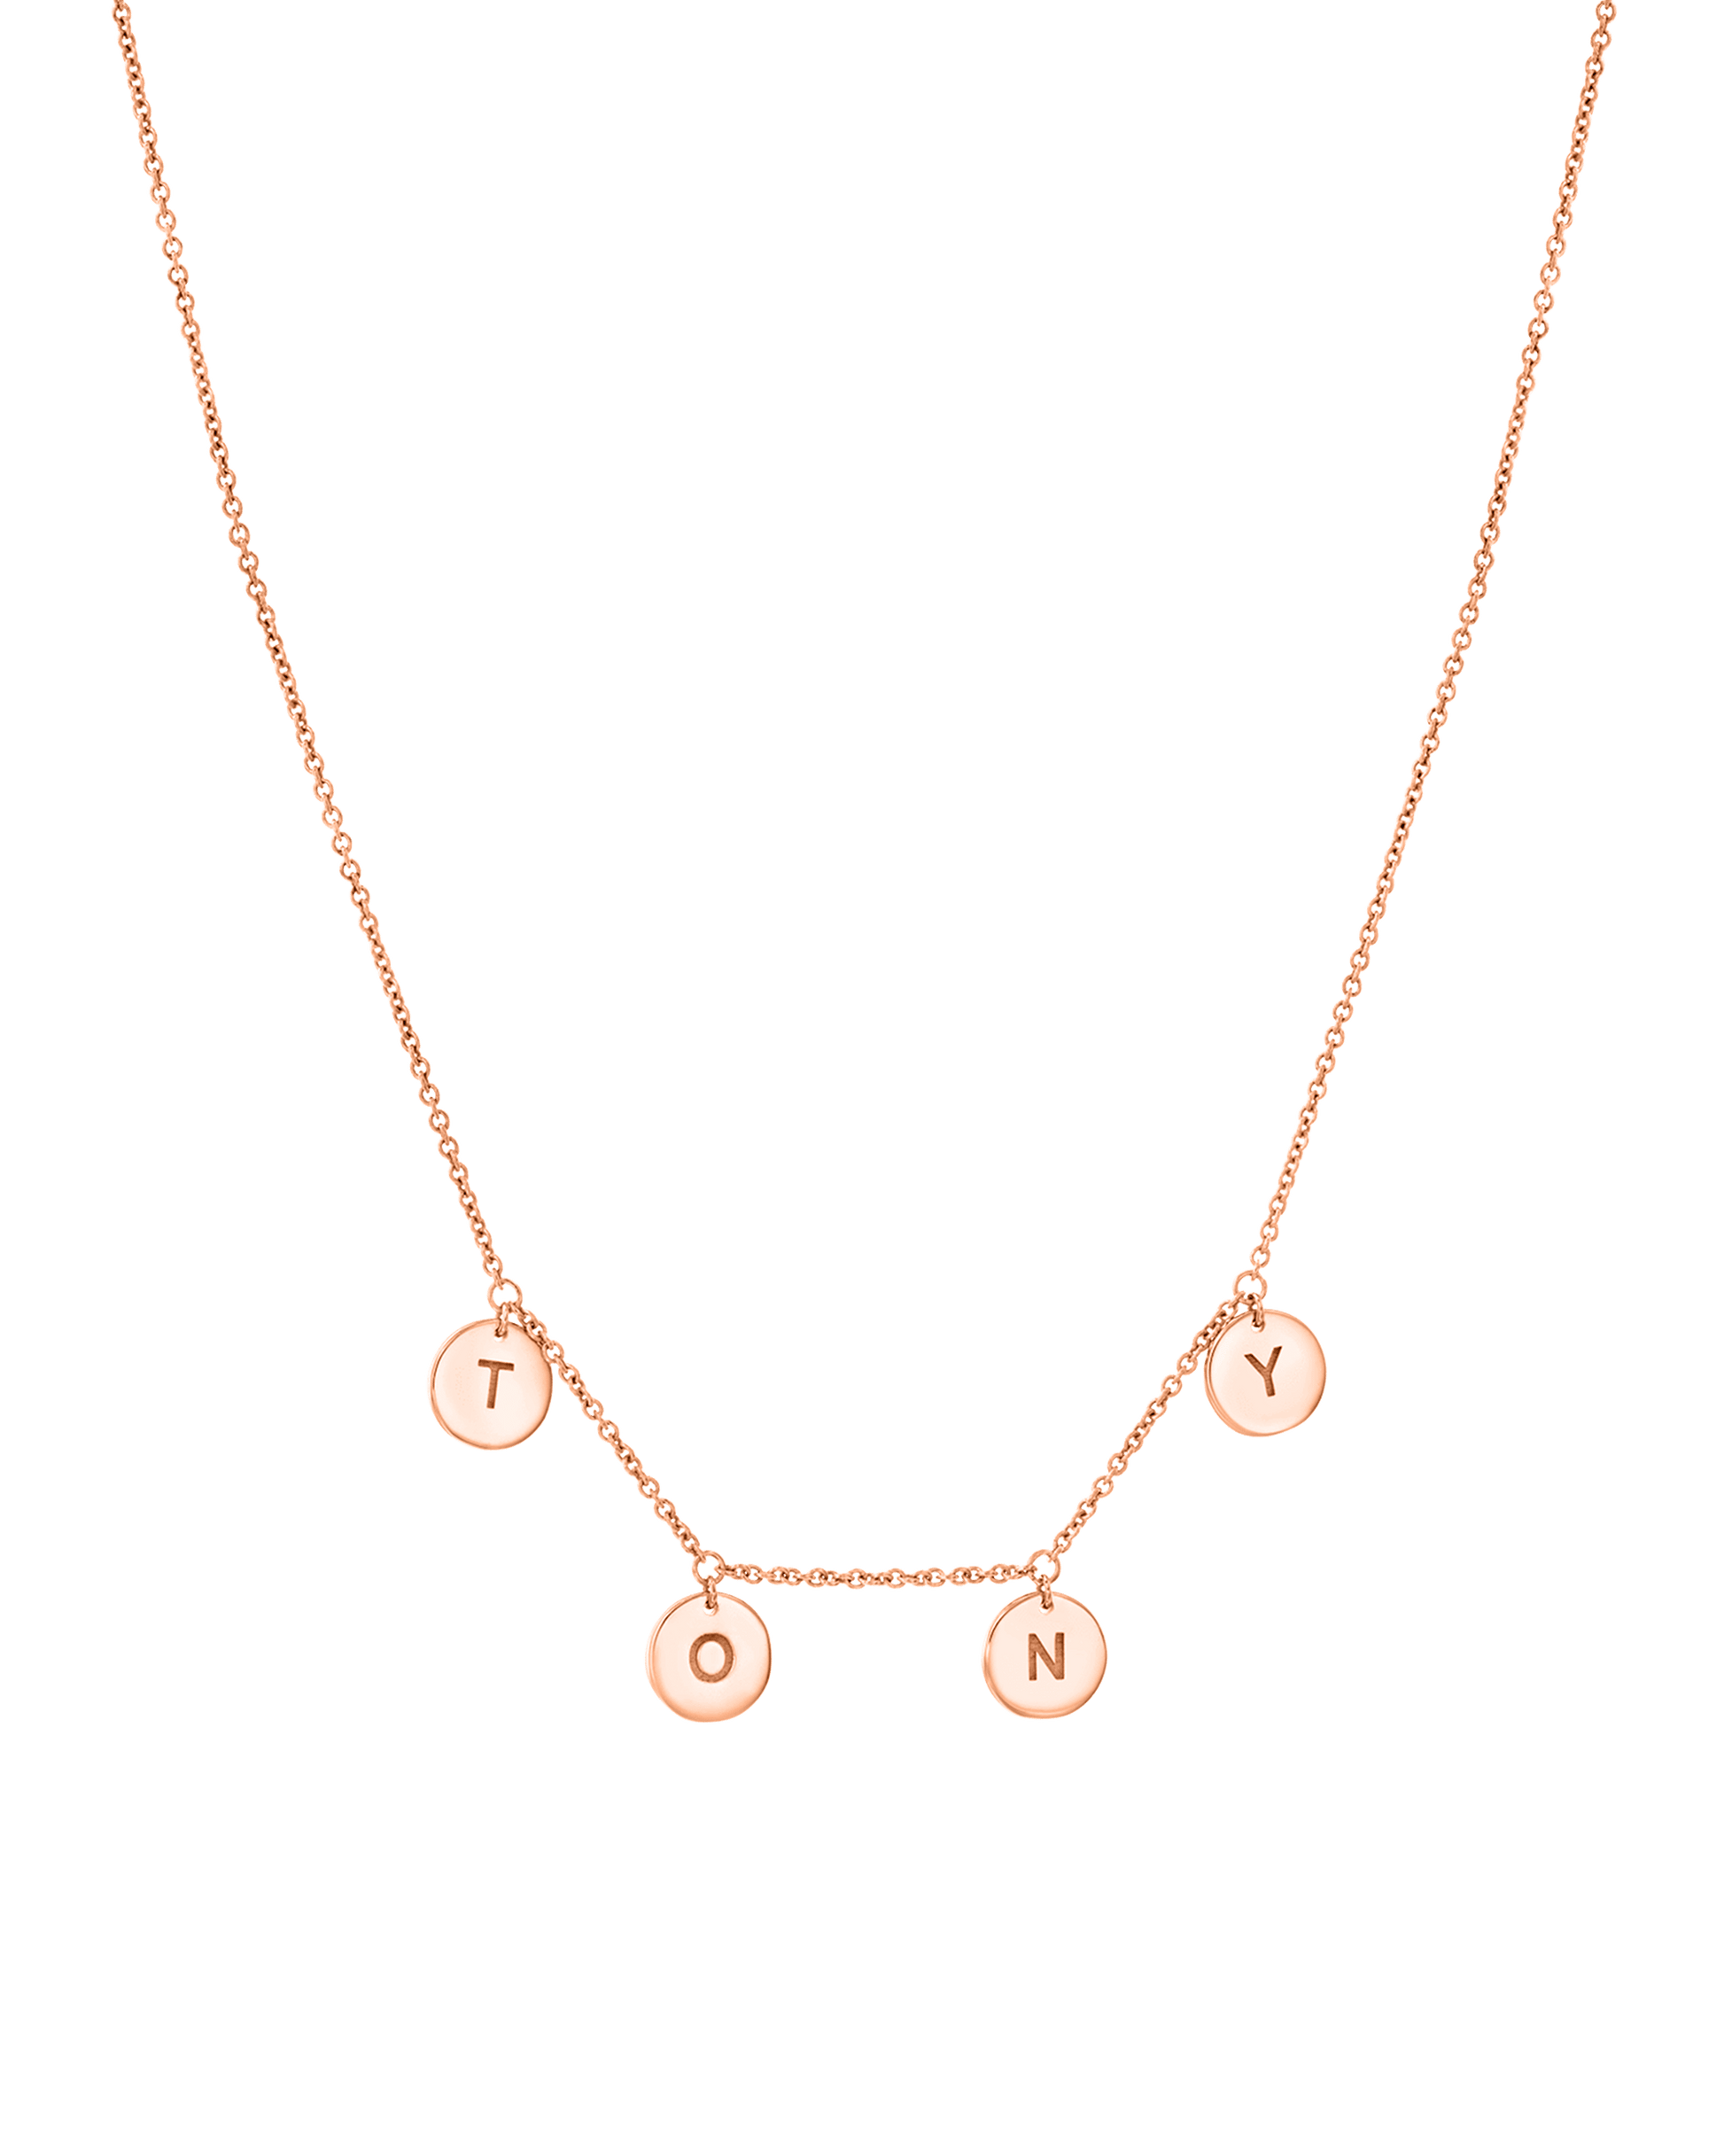 Tiny Letter Pendant Necklace - 18K Gold Vermeil Necklaces magal-dev 